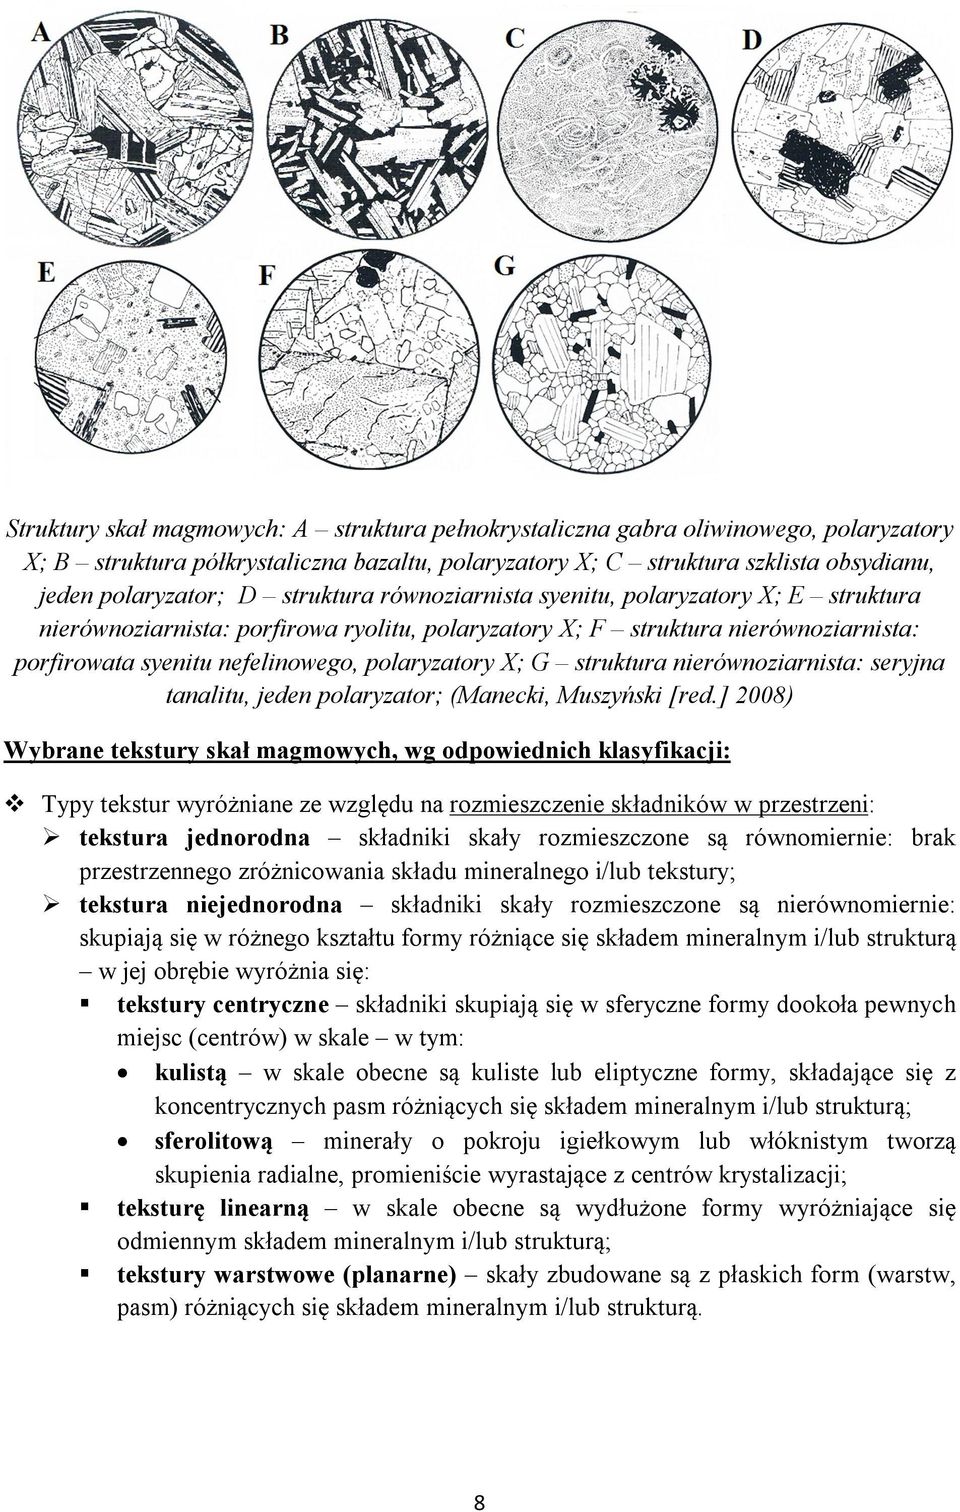 struktura nierównoziarnista: seryjna tanalitu, jeden polaryzator; (Manecki, Muszyński [red.